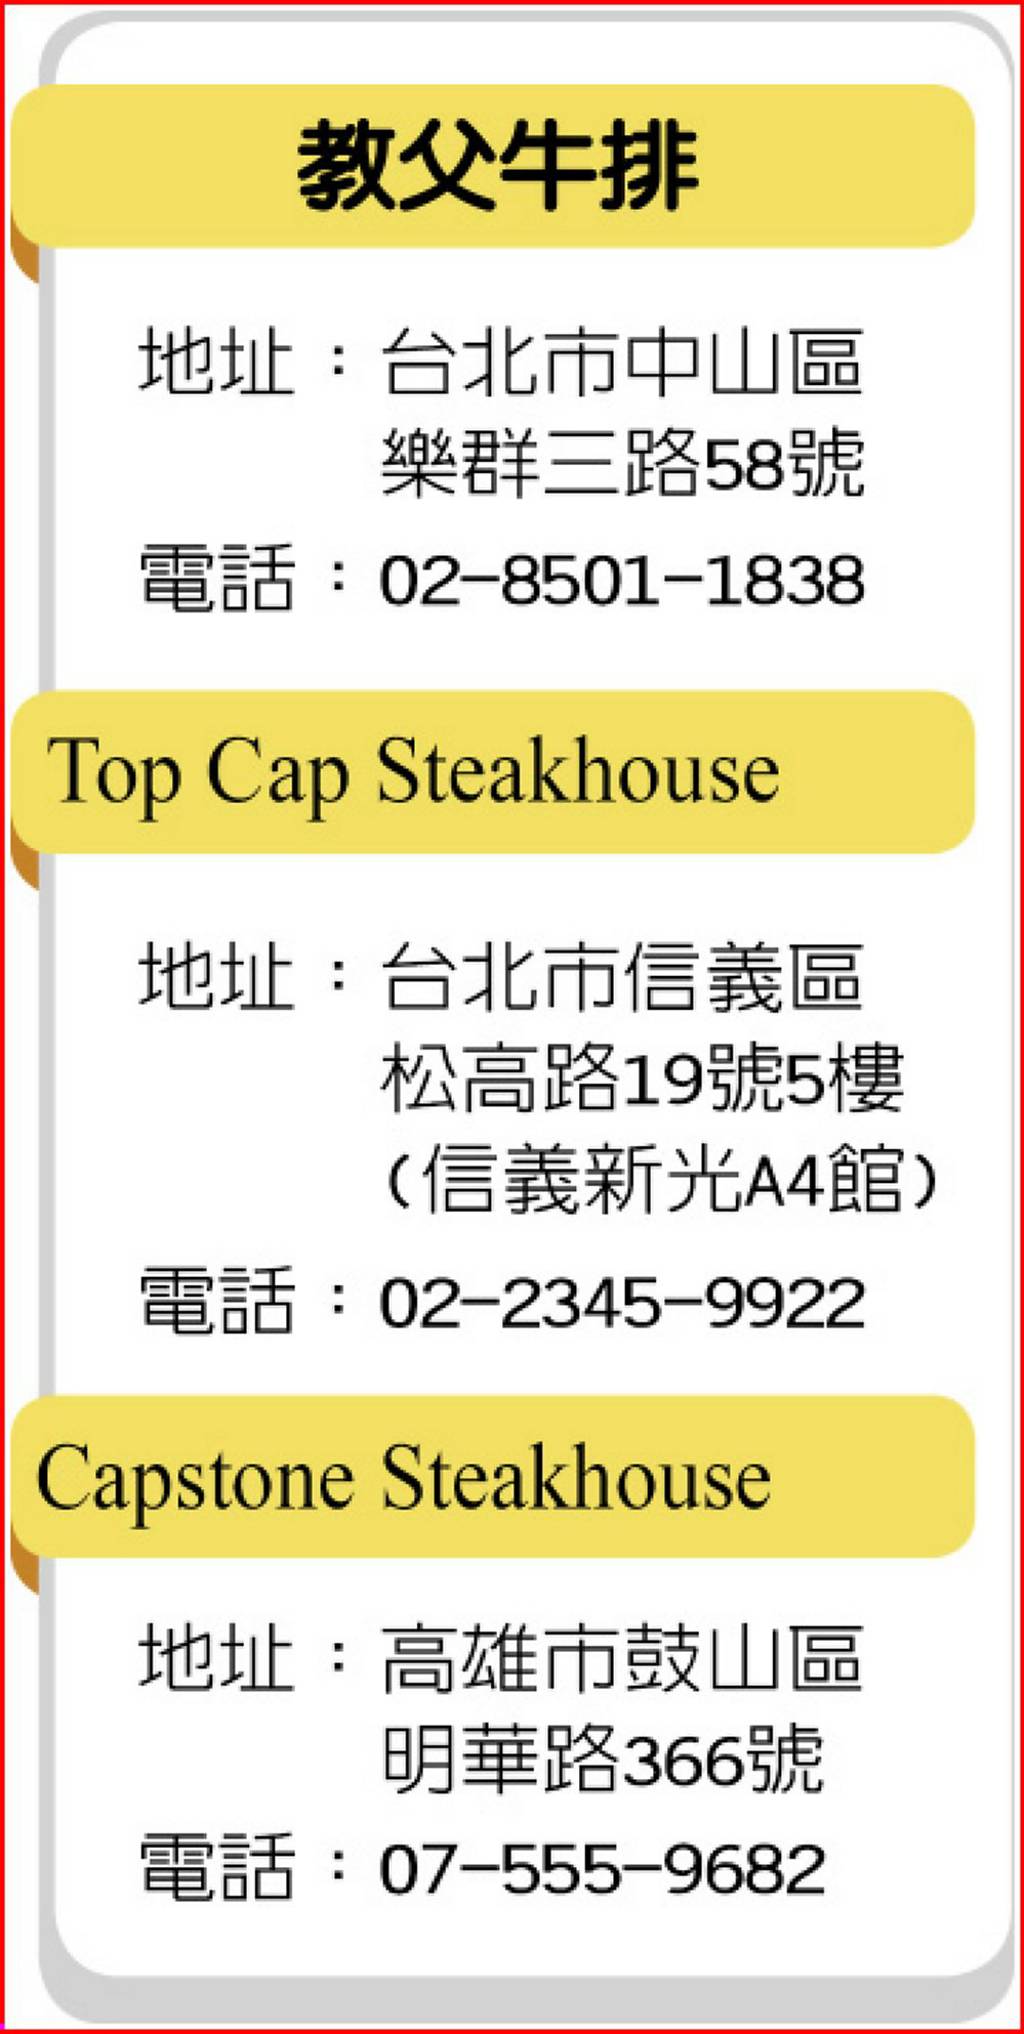 教父牛排
Top Cap Steakhouse
Capstone Steakhouse